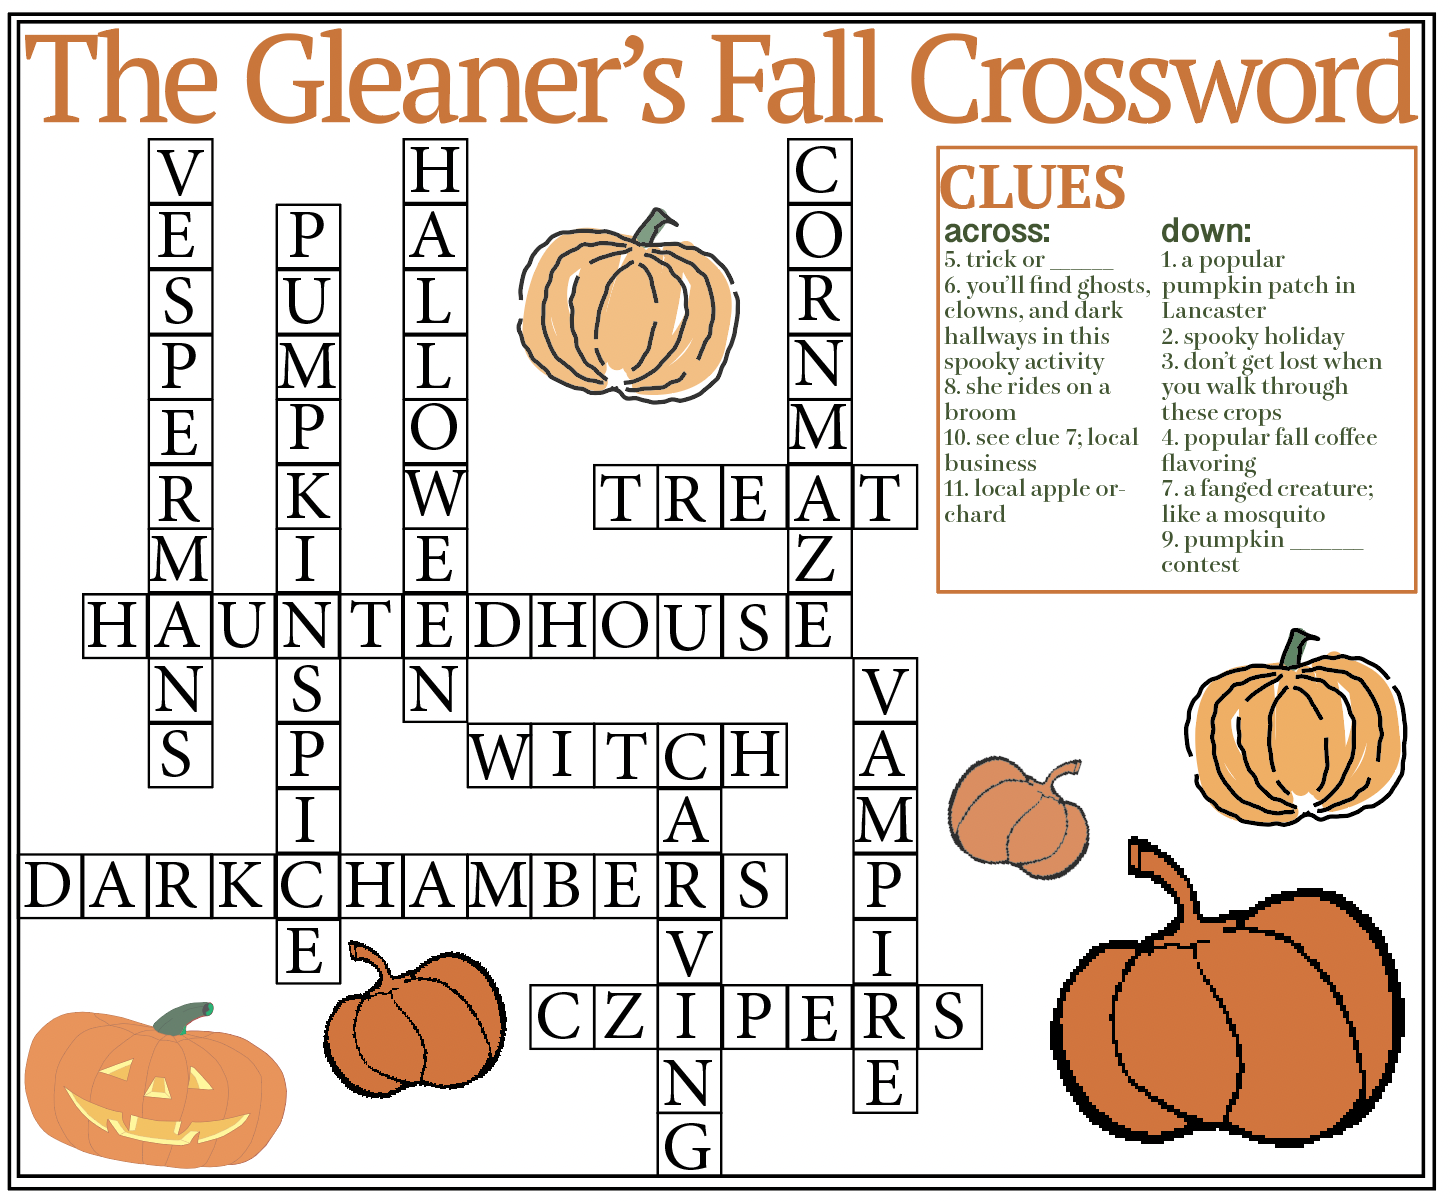 The Gleaner s Fall Crossword The Gleaner